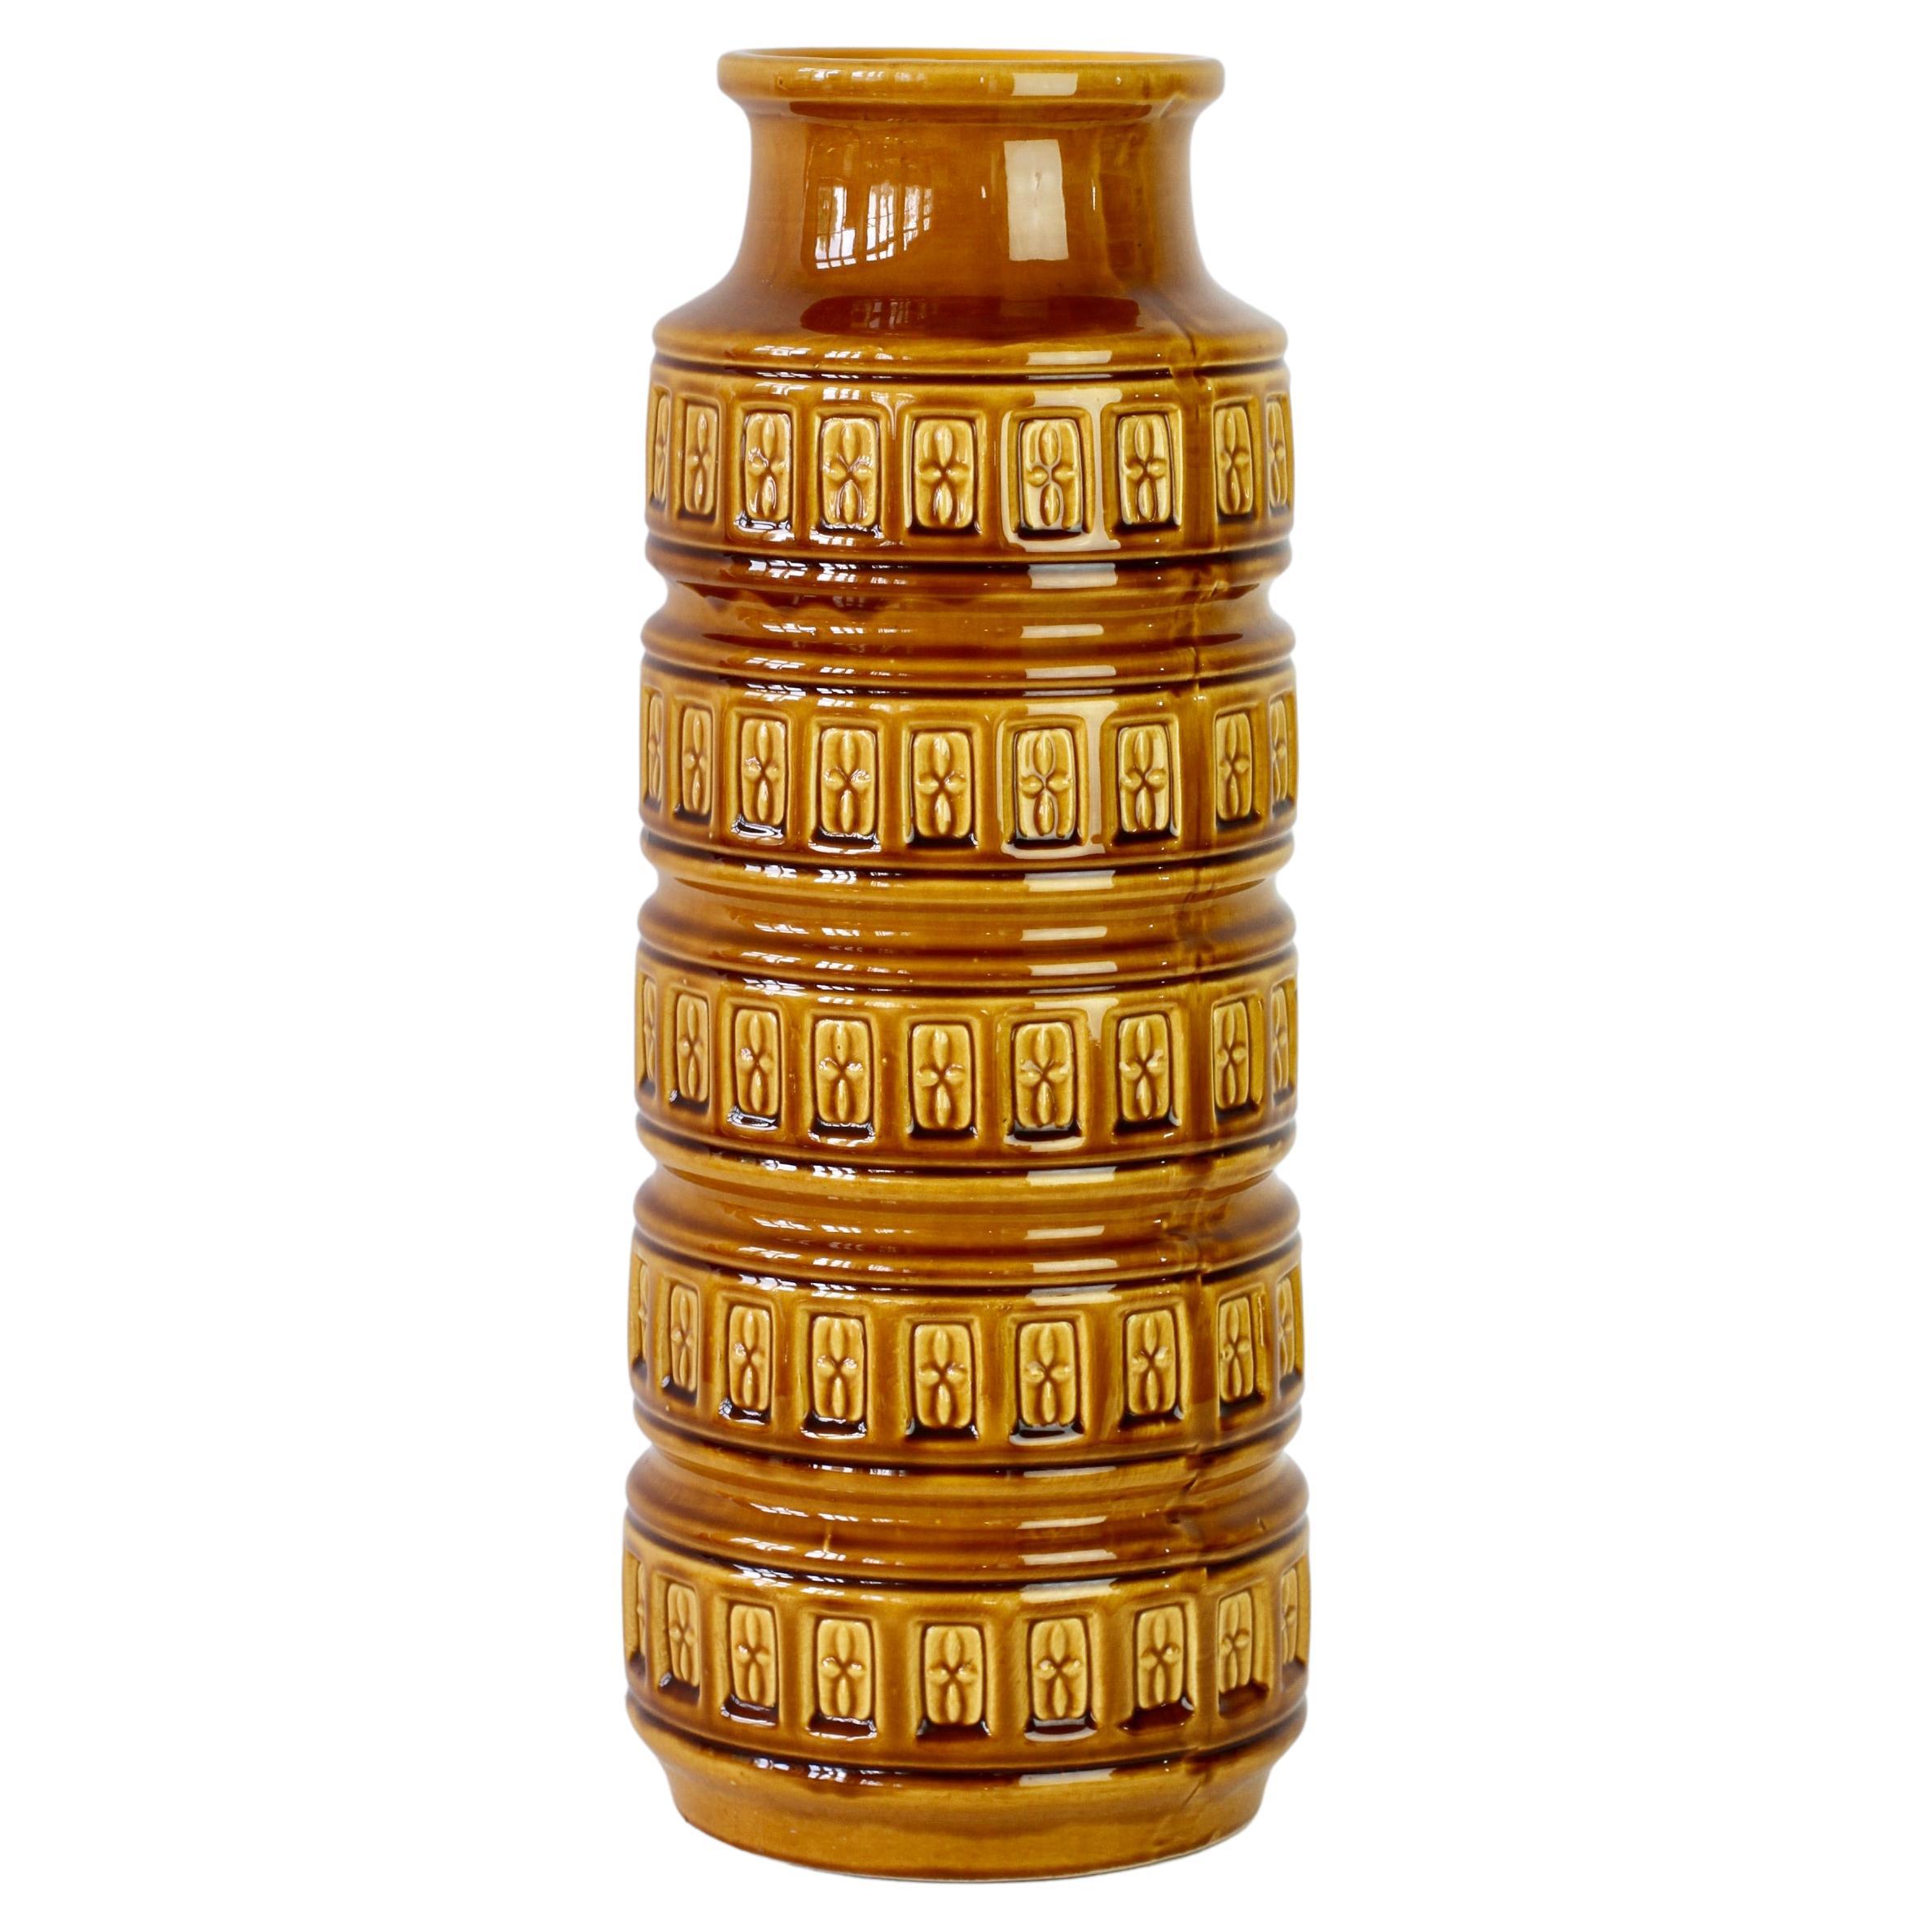 Große Vase des westdeutschen Keramikherstellers 'Bay Keramik' Deutschland, ca. 1970er Jahre. Das geprägte Reliefmuster auf der hohen Bay Keramik Vase ist klassisch, 1970er Jahre mit seiner honigsenfgelben oder bernsteinfarbenen Glasur ist es der